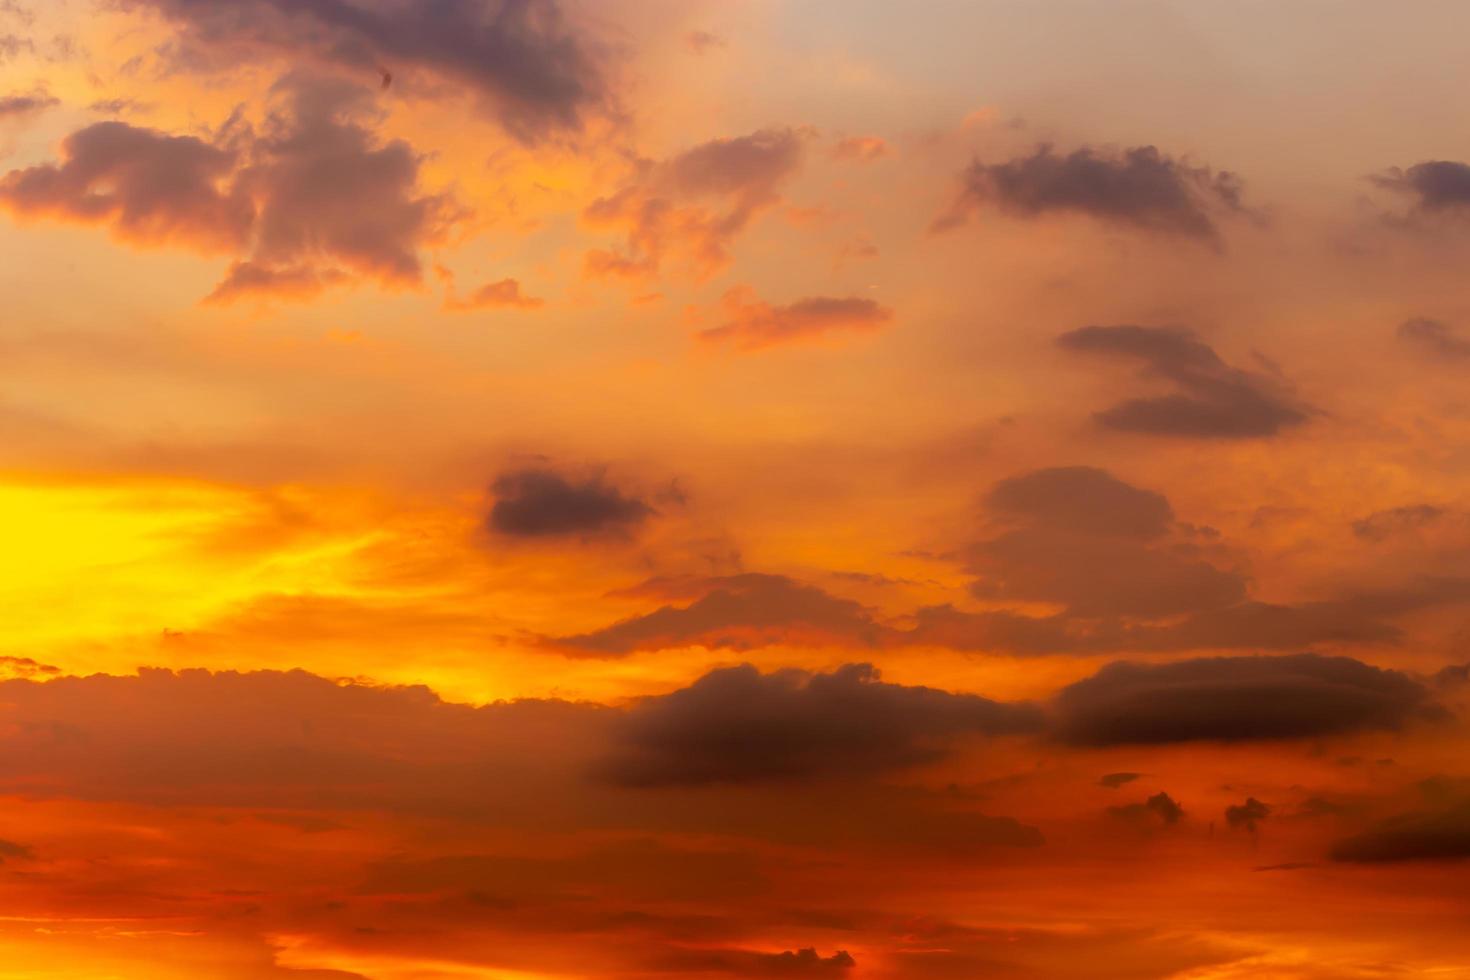 schöner sonnenaufgang sonnenuntergang himmel für den hintergrund foto